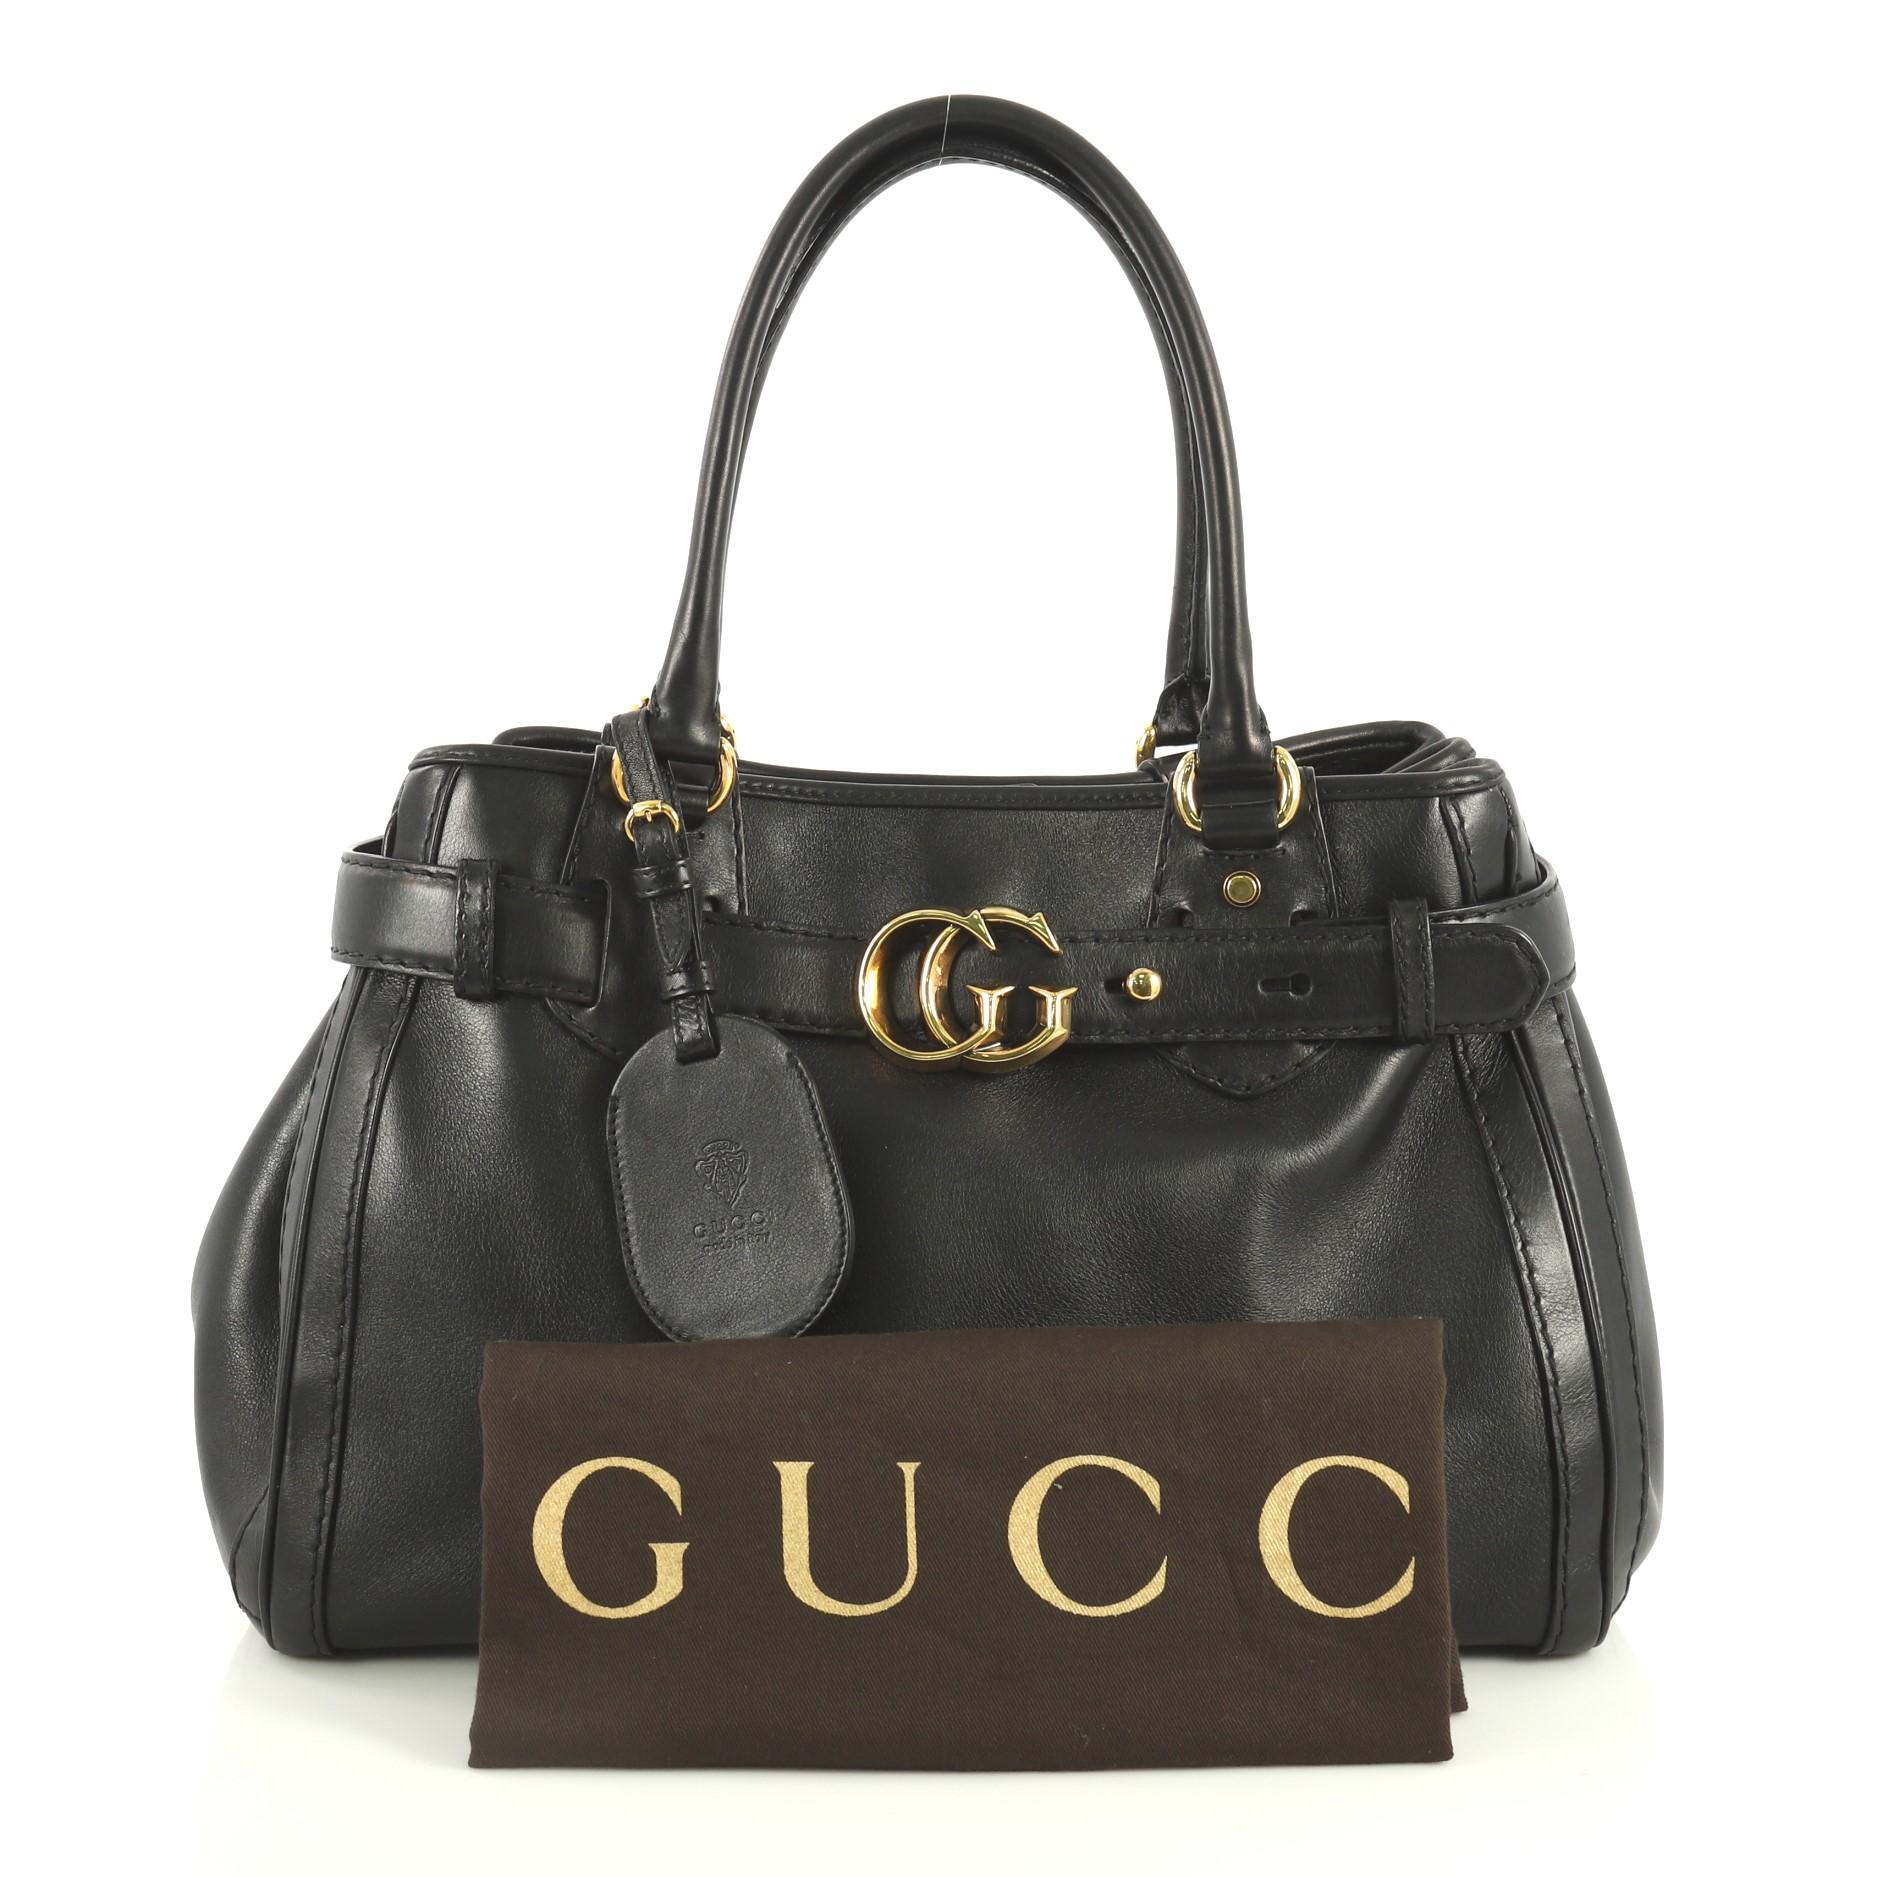 Ce sac Gucci GG Running Tote Leather Medium:: fabriqué en cuir noir:: est doté de deux poignées en cuir roulées:: d'une ceinture supérieure avec des boucles et une boucle GG entrelacée:: de clous de protection et d'un matériel de couleur dorée. Sa